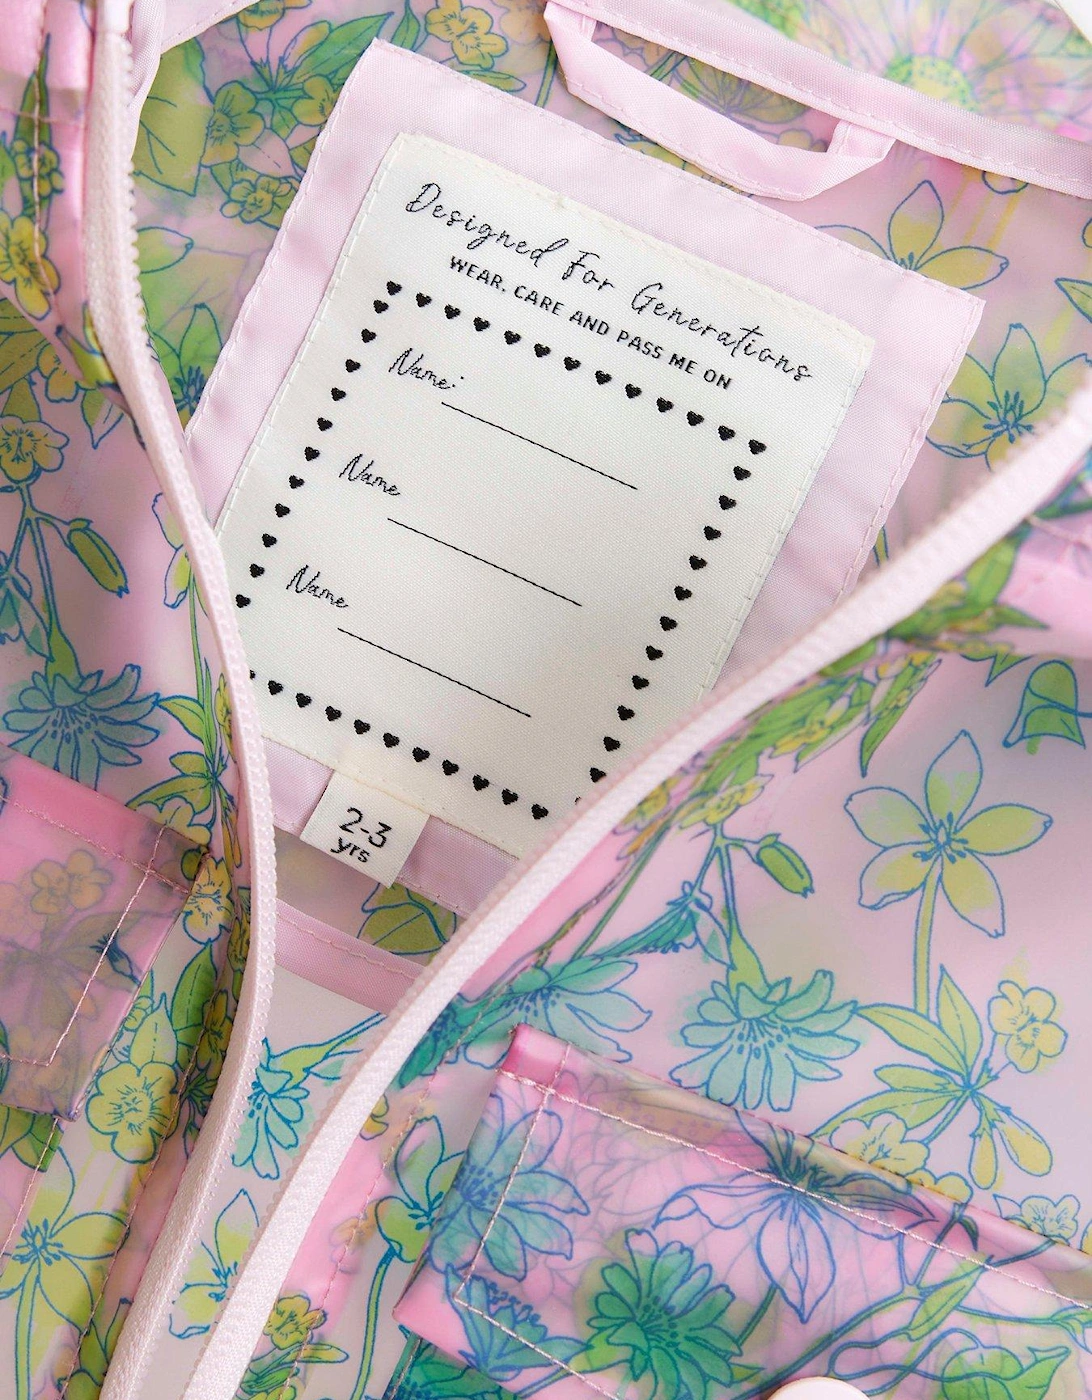 Mini Girls Floral Rain Coat And Bag Set - Pink